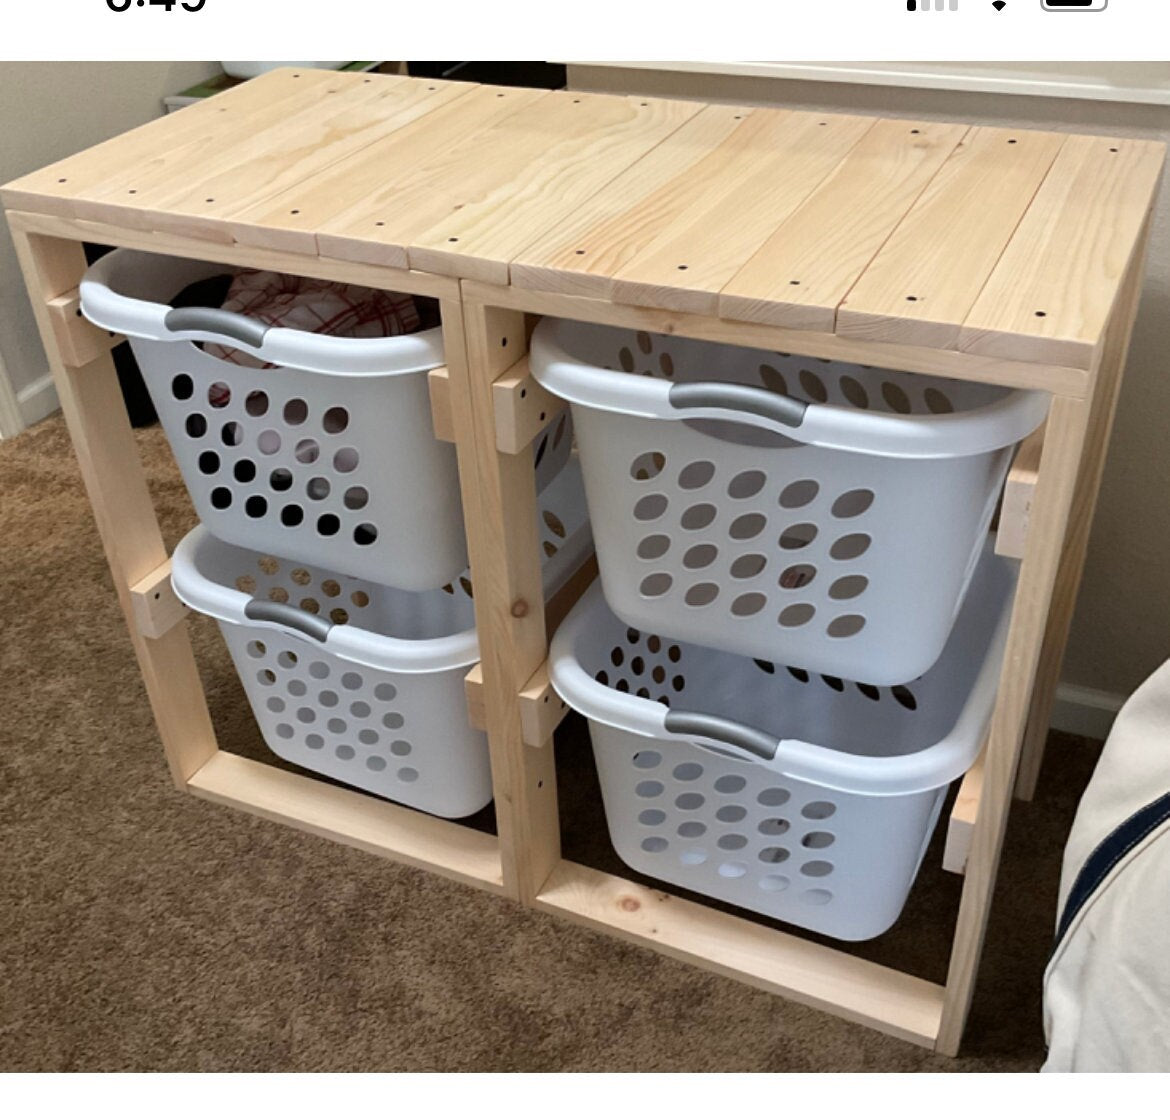 Laundry Basket Shelf